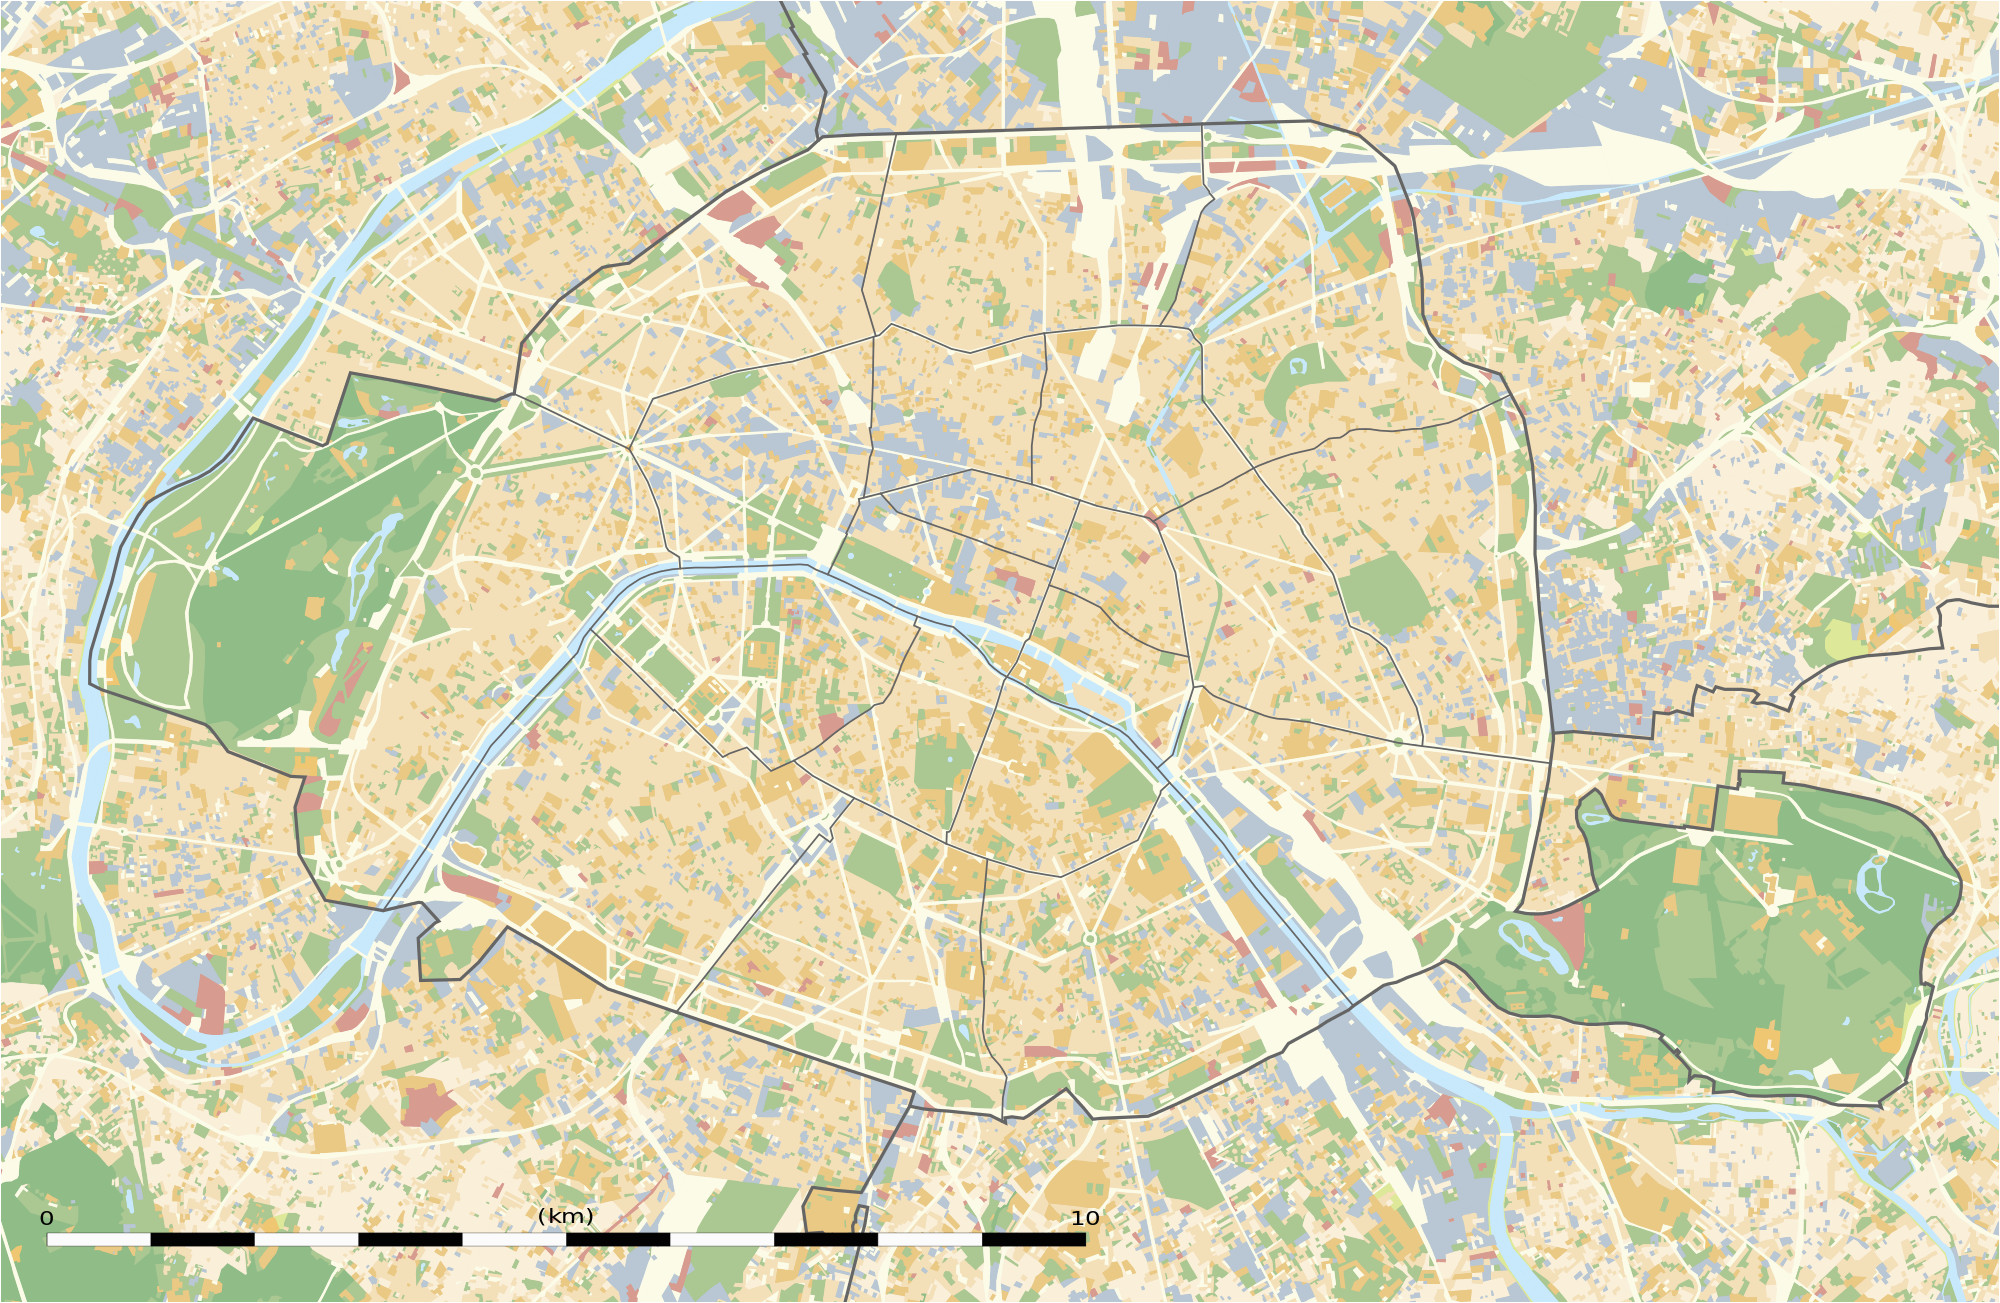 kayat-kandi-city-map-of-paris